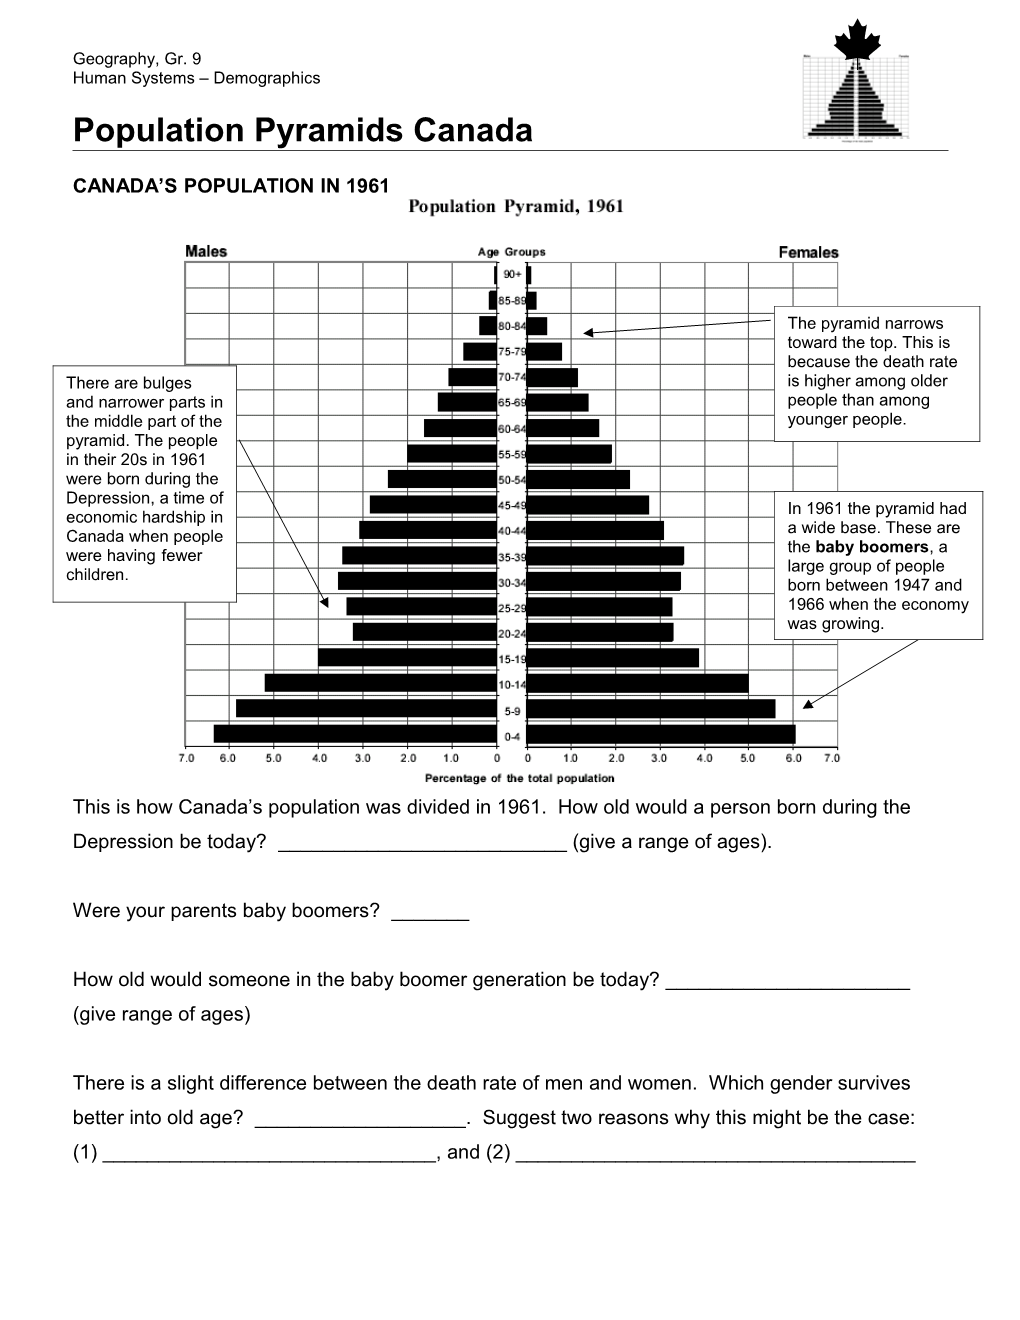 Population Pyramids Canada